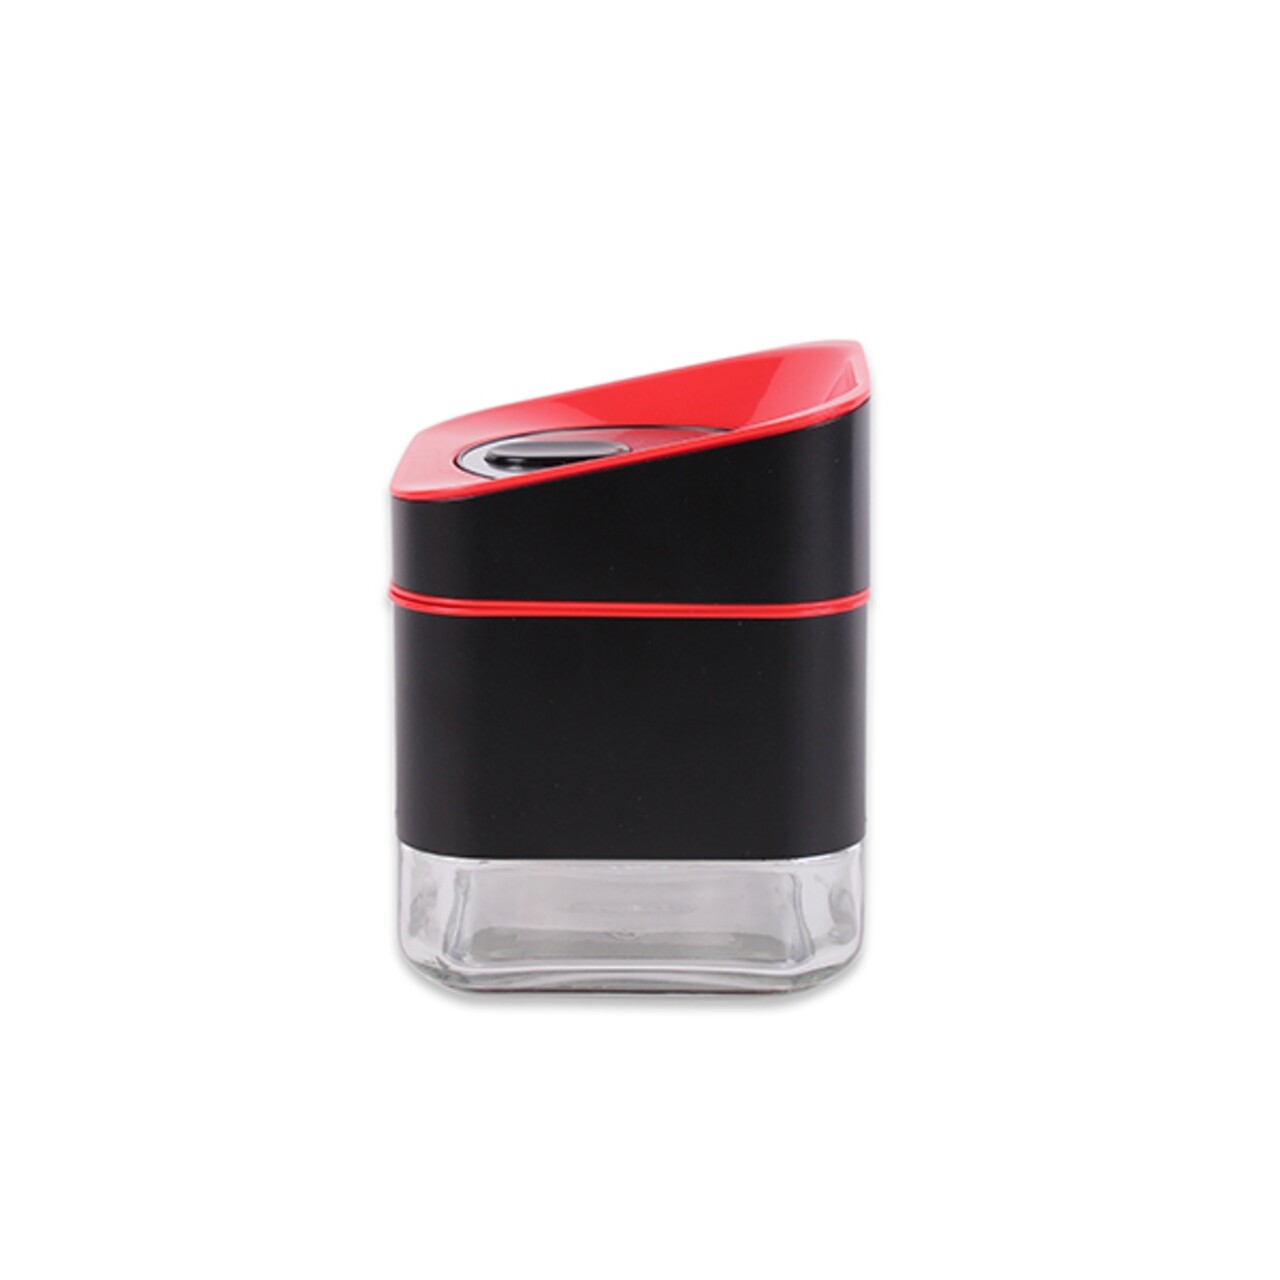 Luigi Ferrero Atlanta Tároló Fedővel, 600 Ml, Műanyag/üveg, Piros/fekete